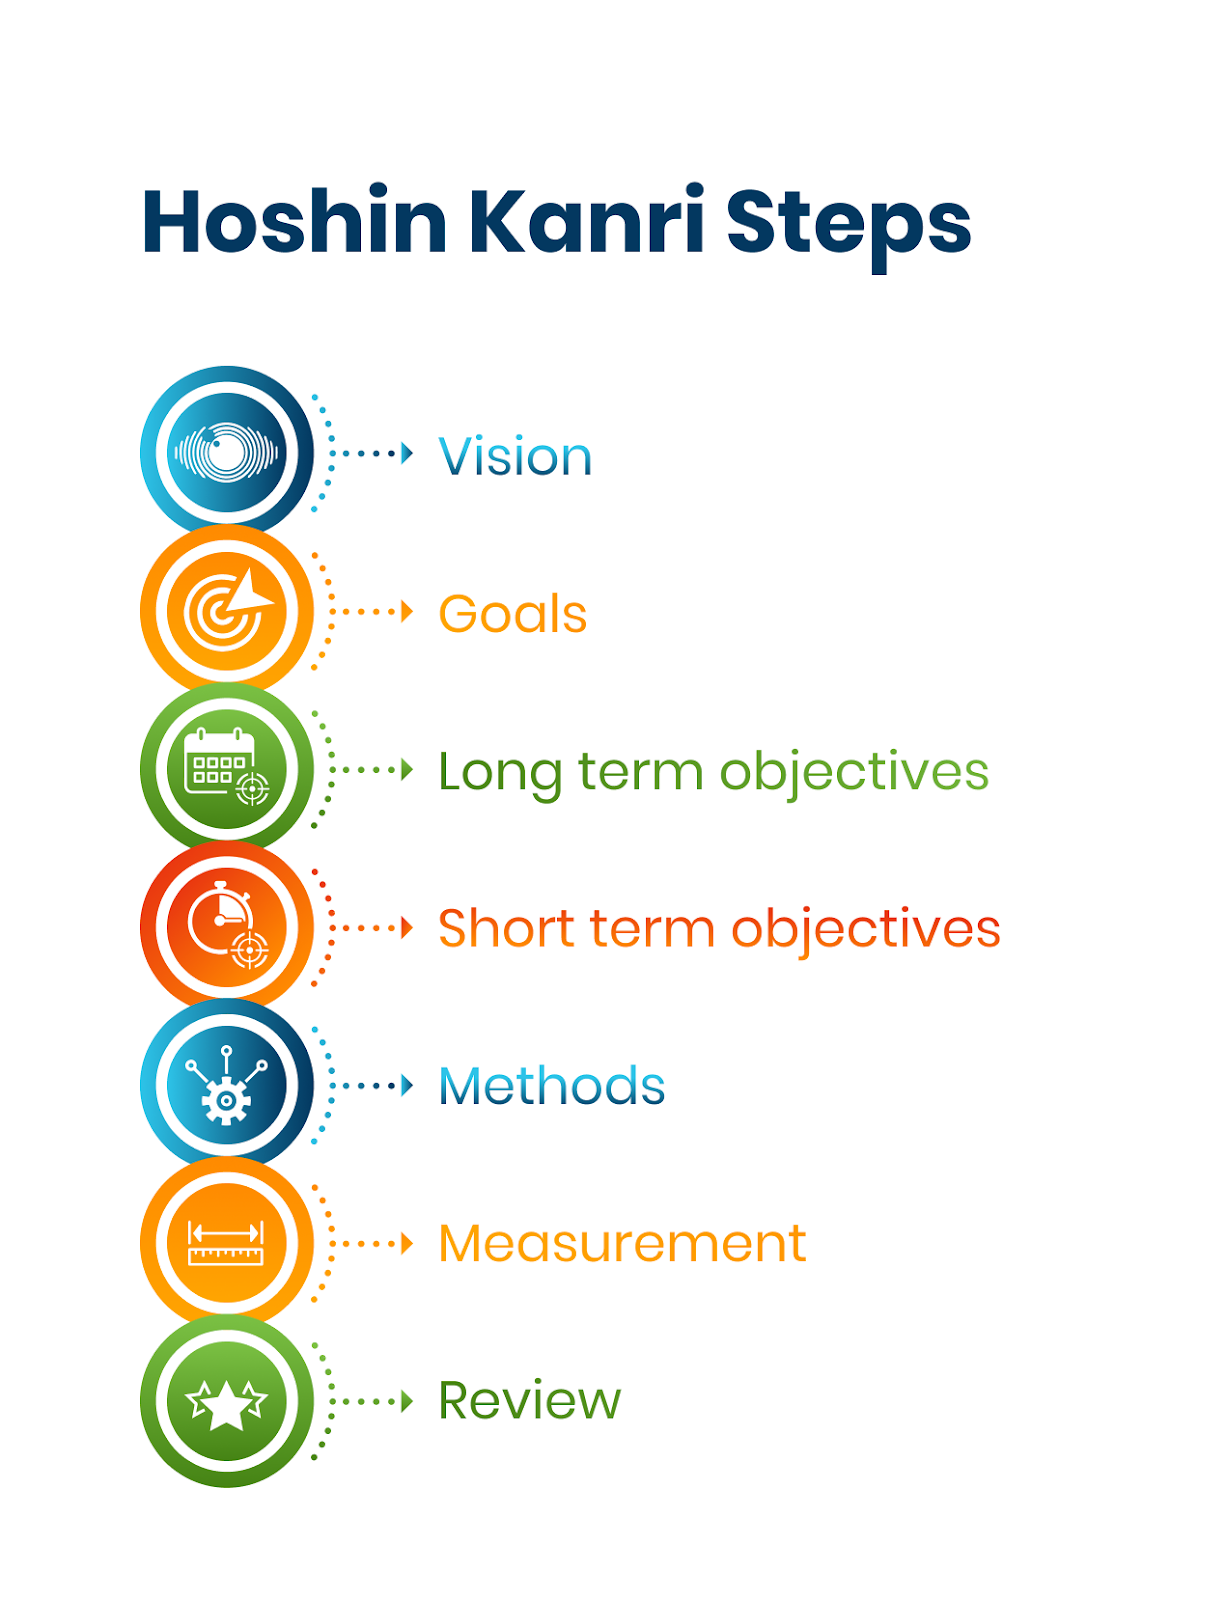 Hoshin Kanri Steps 